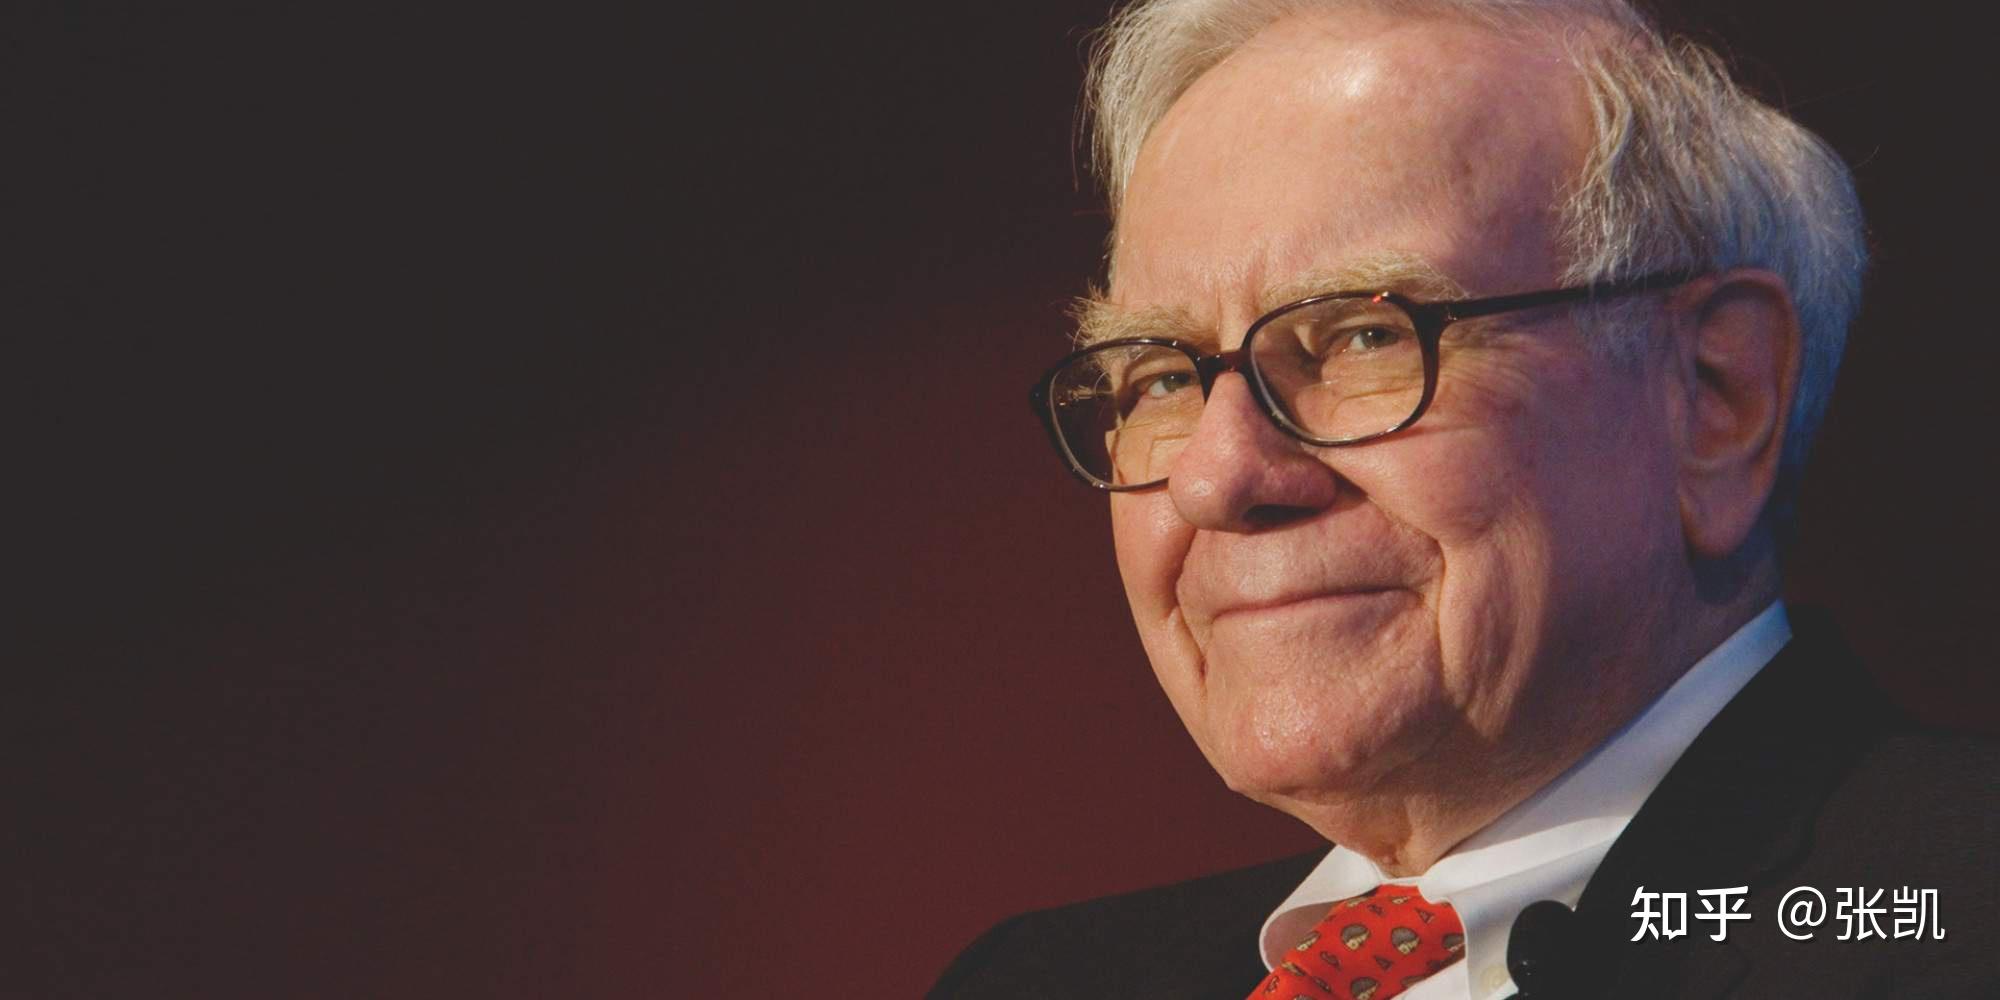 How Warren Buffett, Charlie Munger and Bill Gates work together